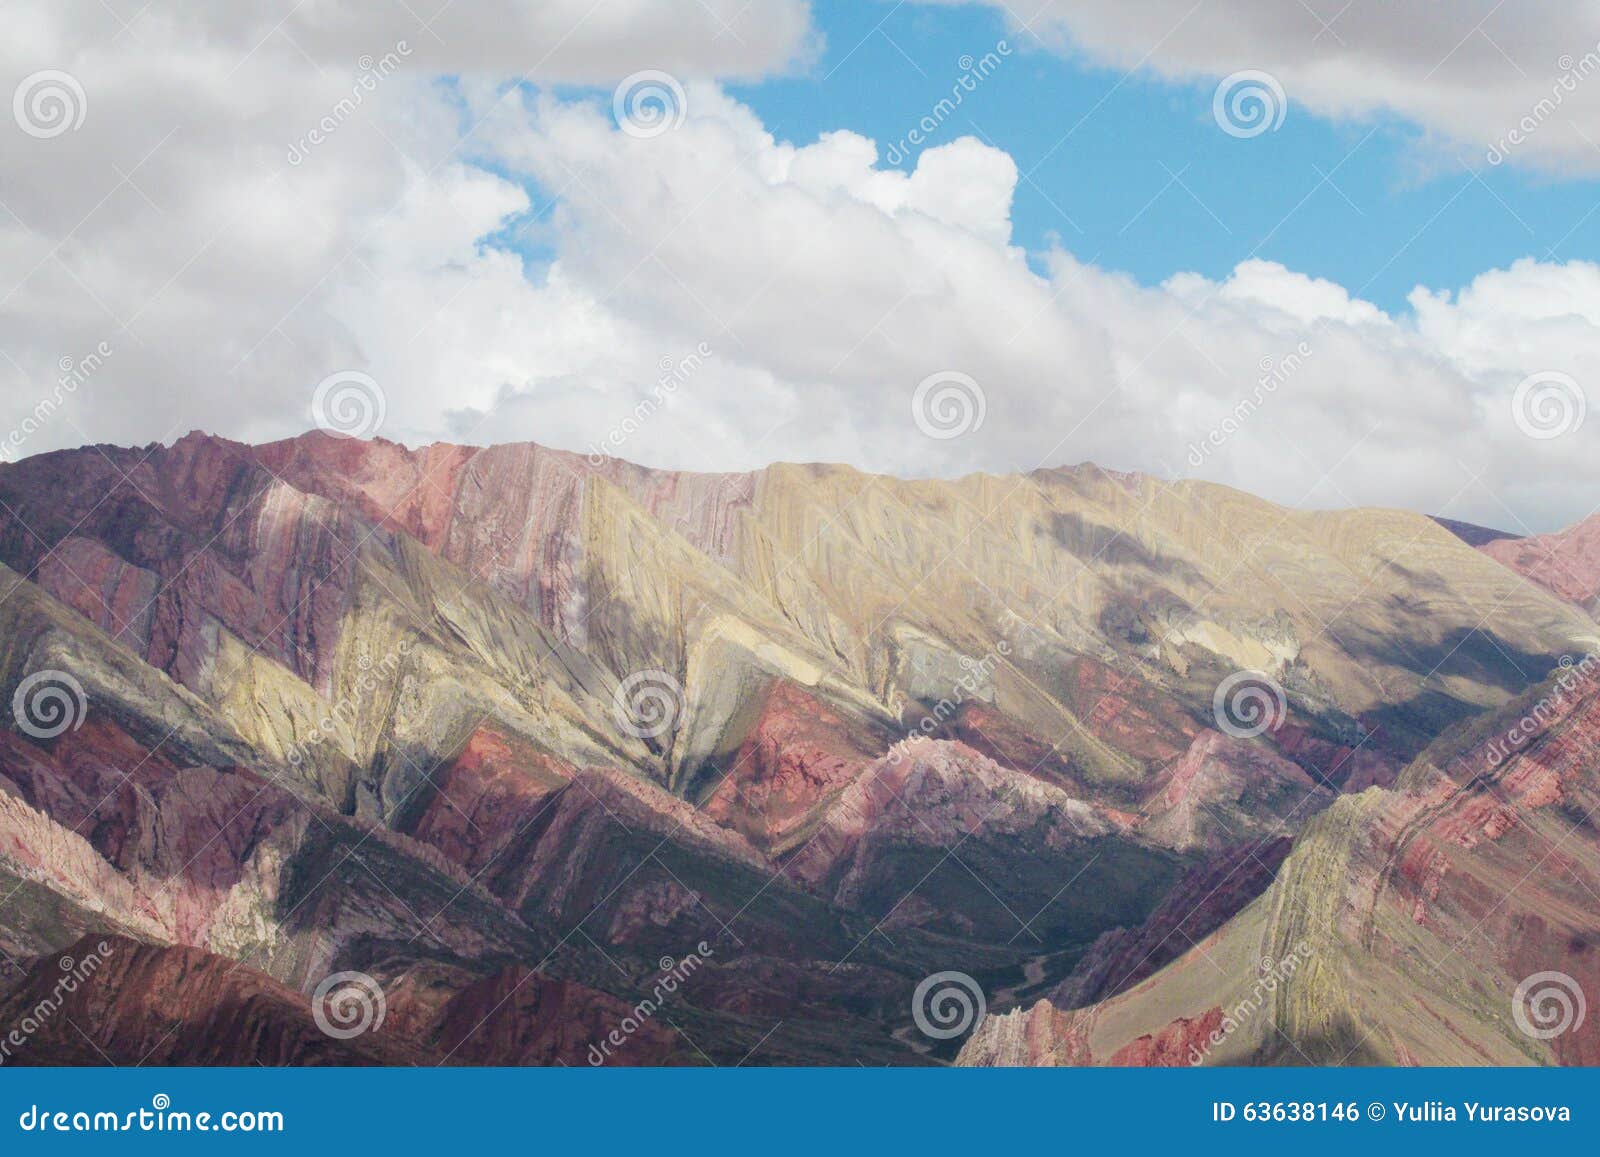 red striped mountains cerro de siete colores in argentina